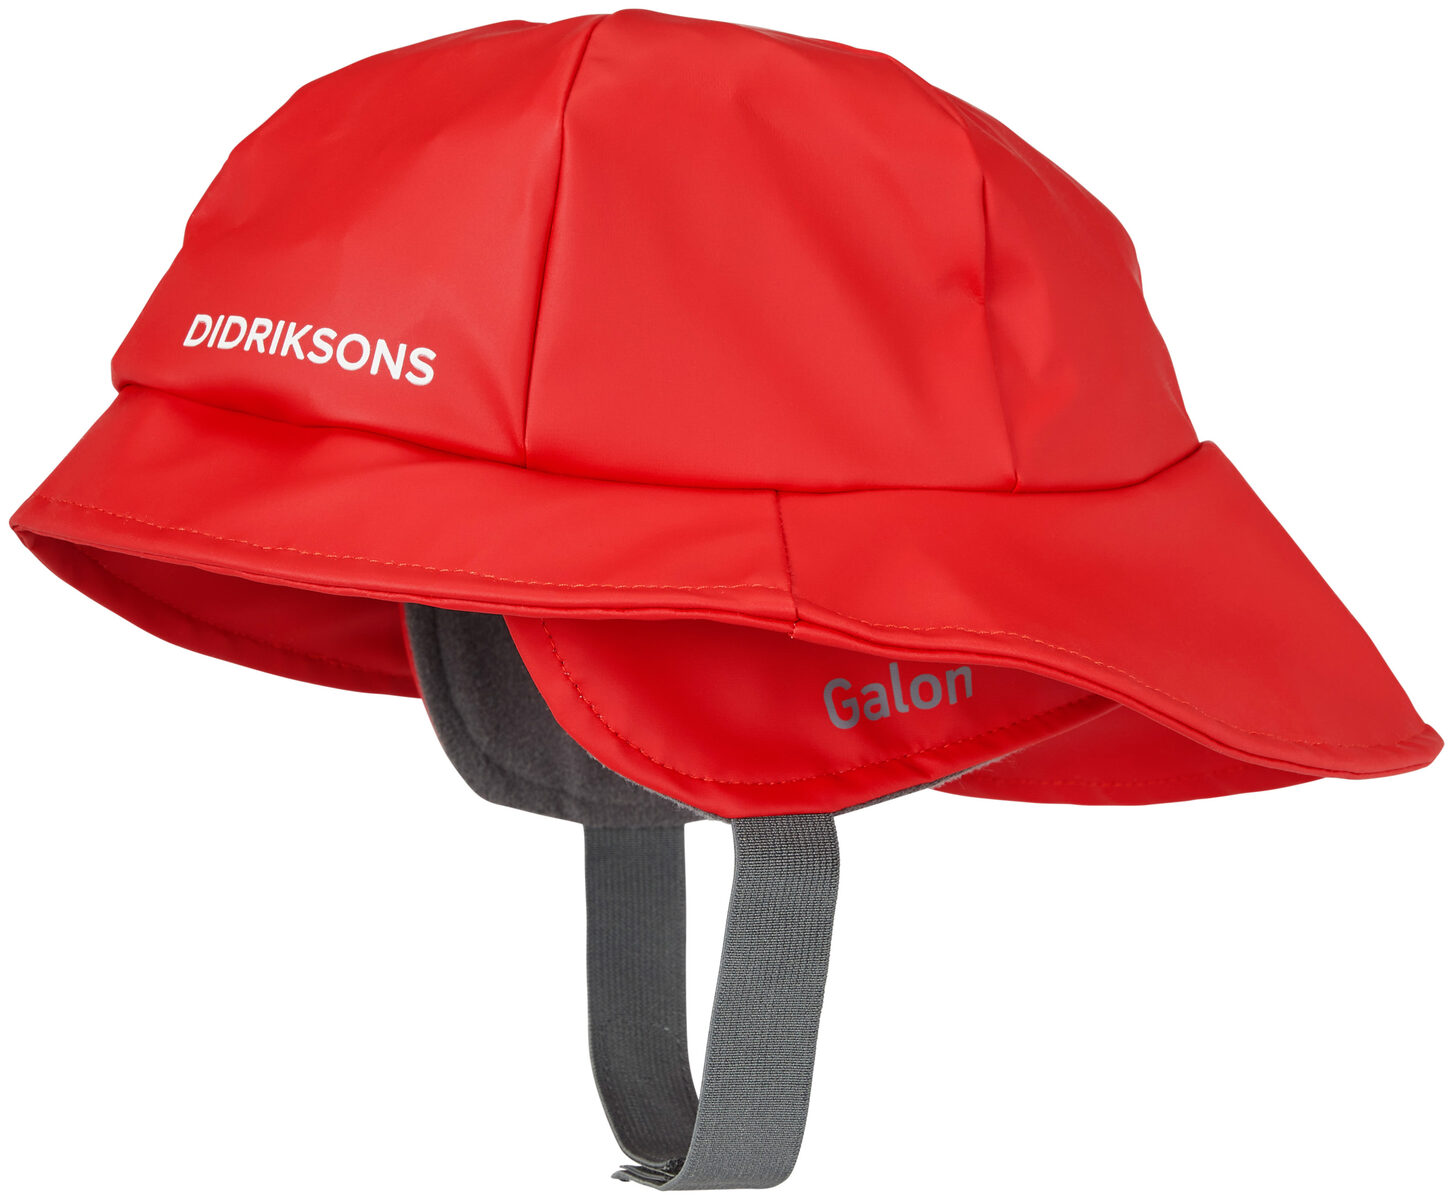 UVP Didriksons Probe Junior Beaniewärmende Mütze für Kinderehem 14,95€ 